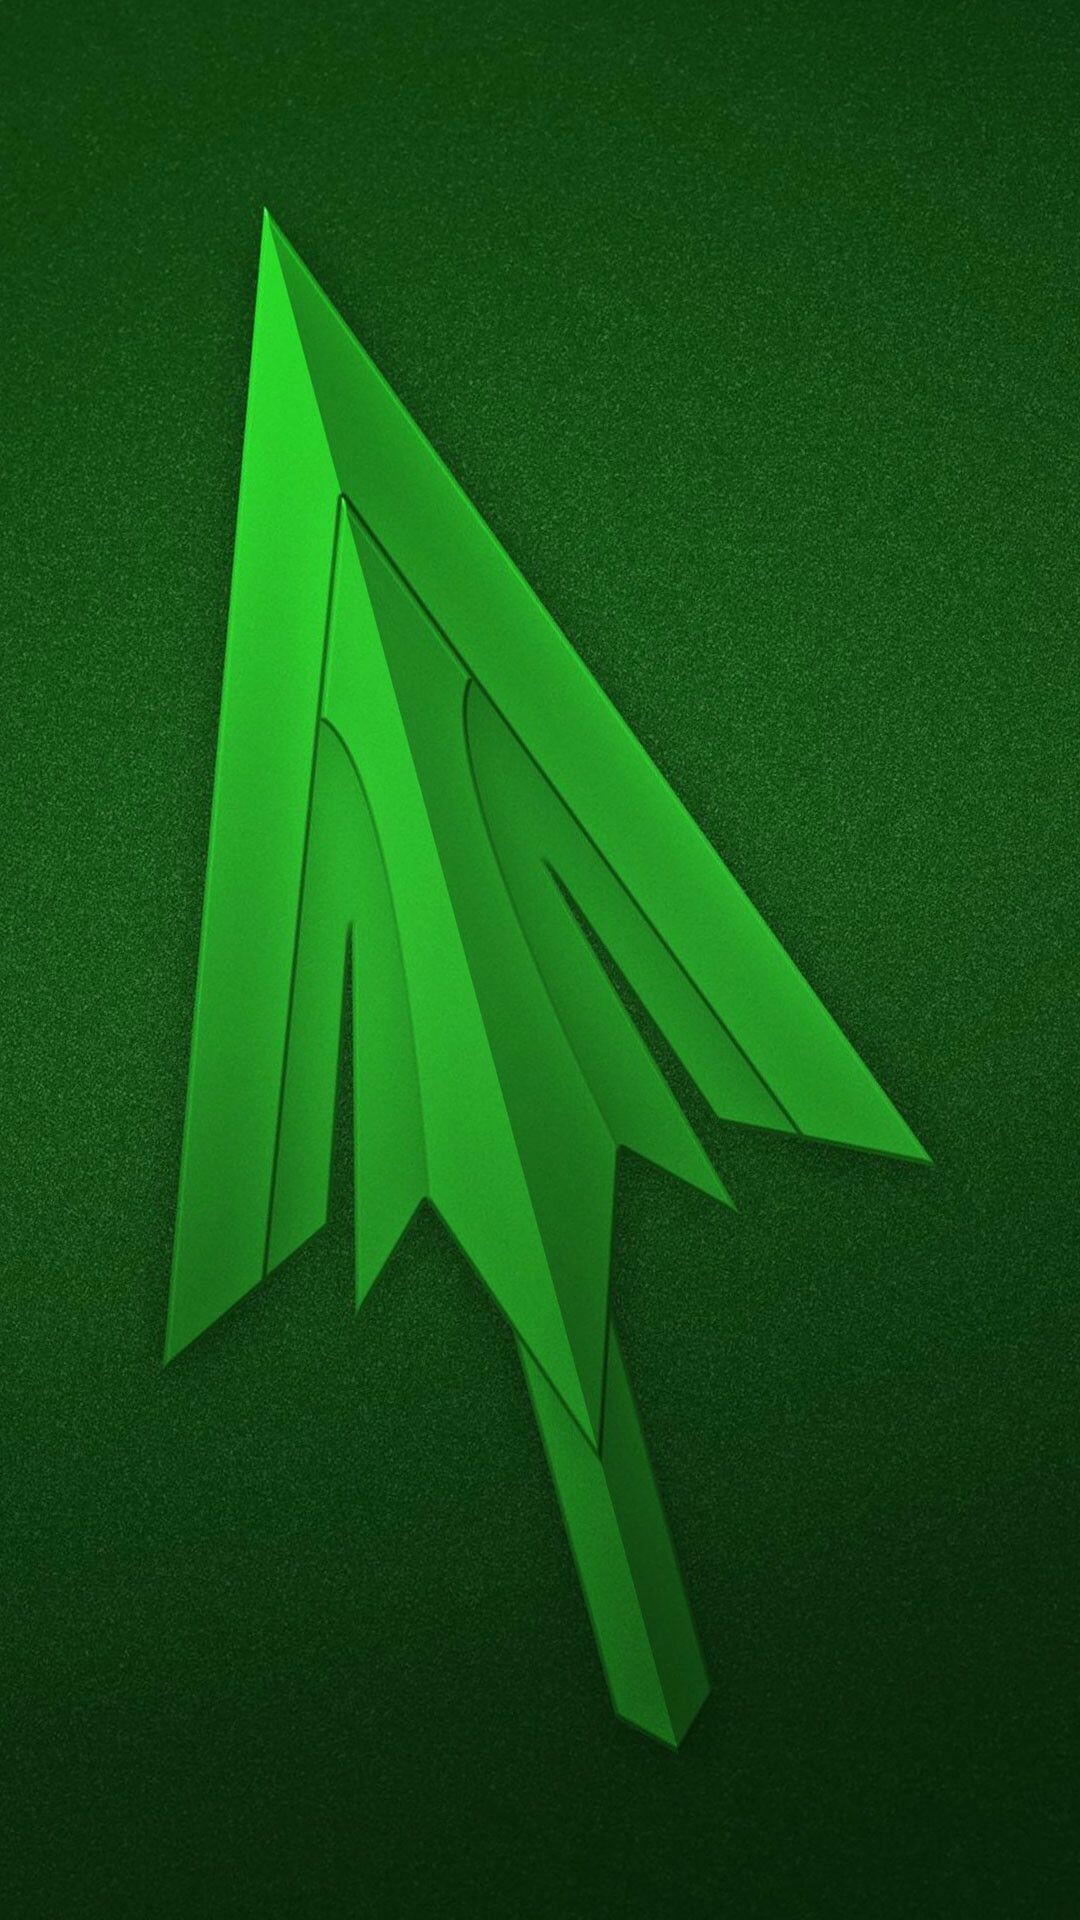 Green Arrow: The emerald archer of DC Comics, Logo. 1080x1920 Full HD Wallpaper.